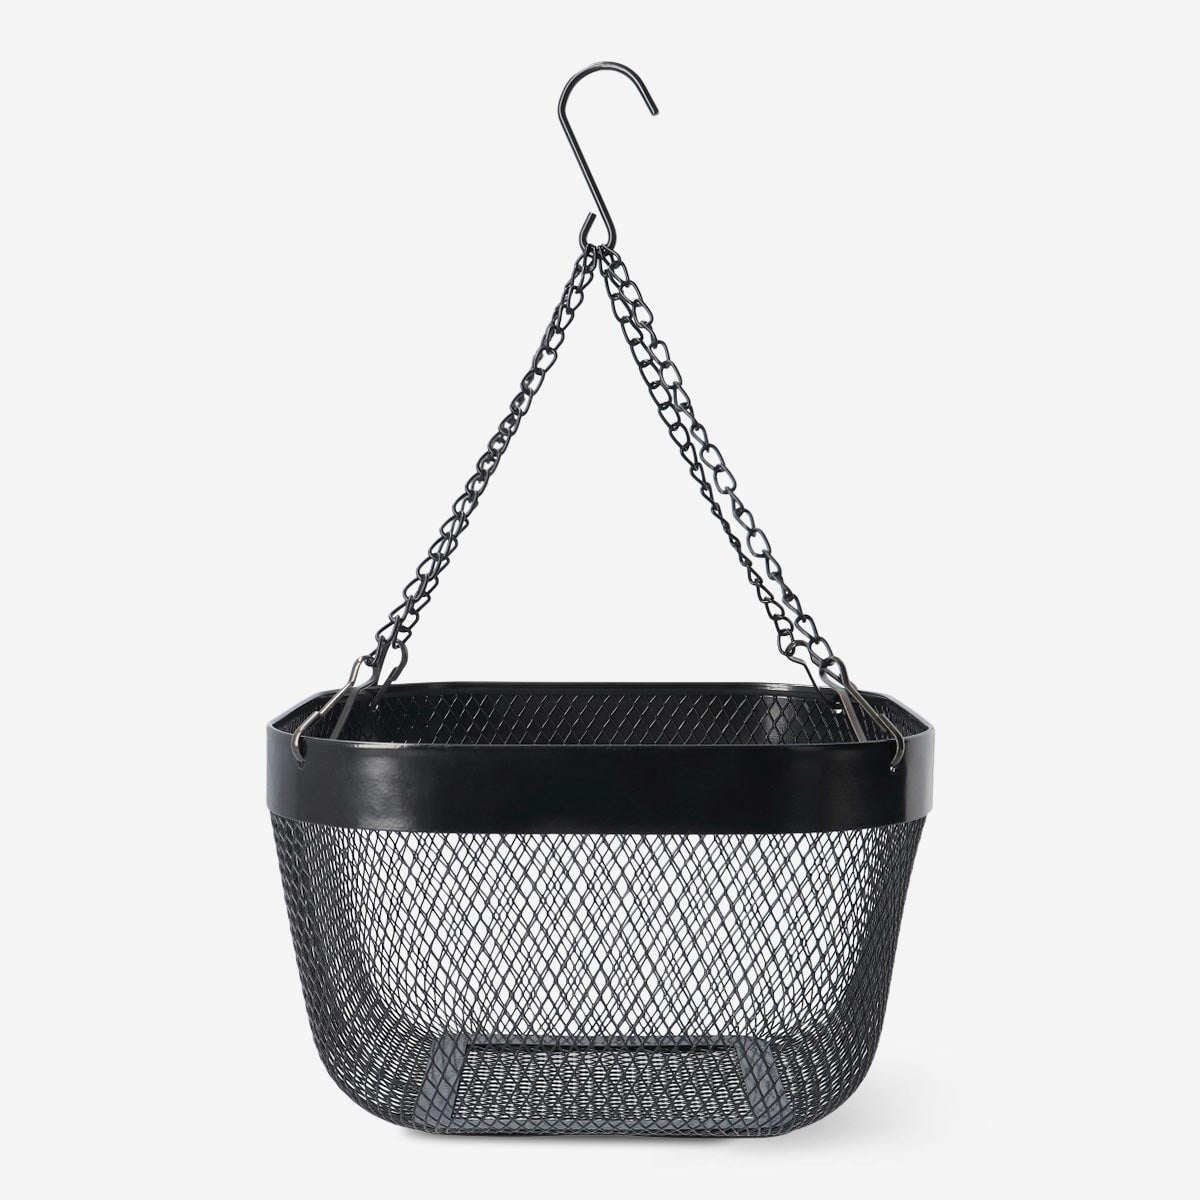 Basket. For hanging Kitchen Flying Tiger Copenhagen 